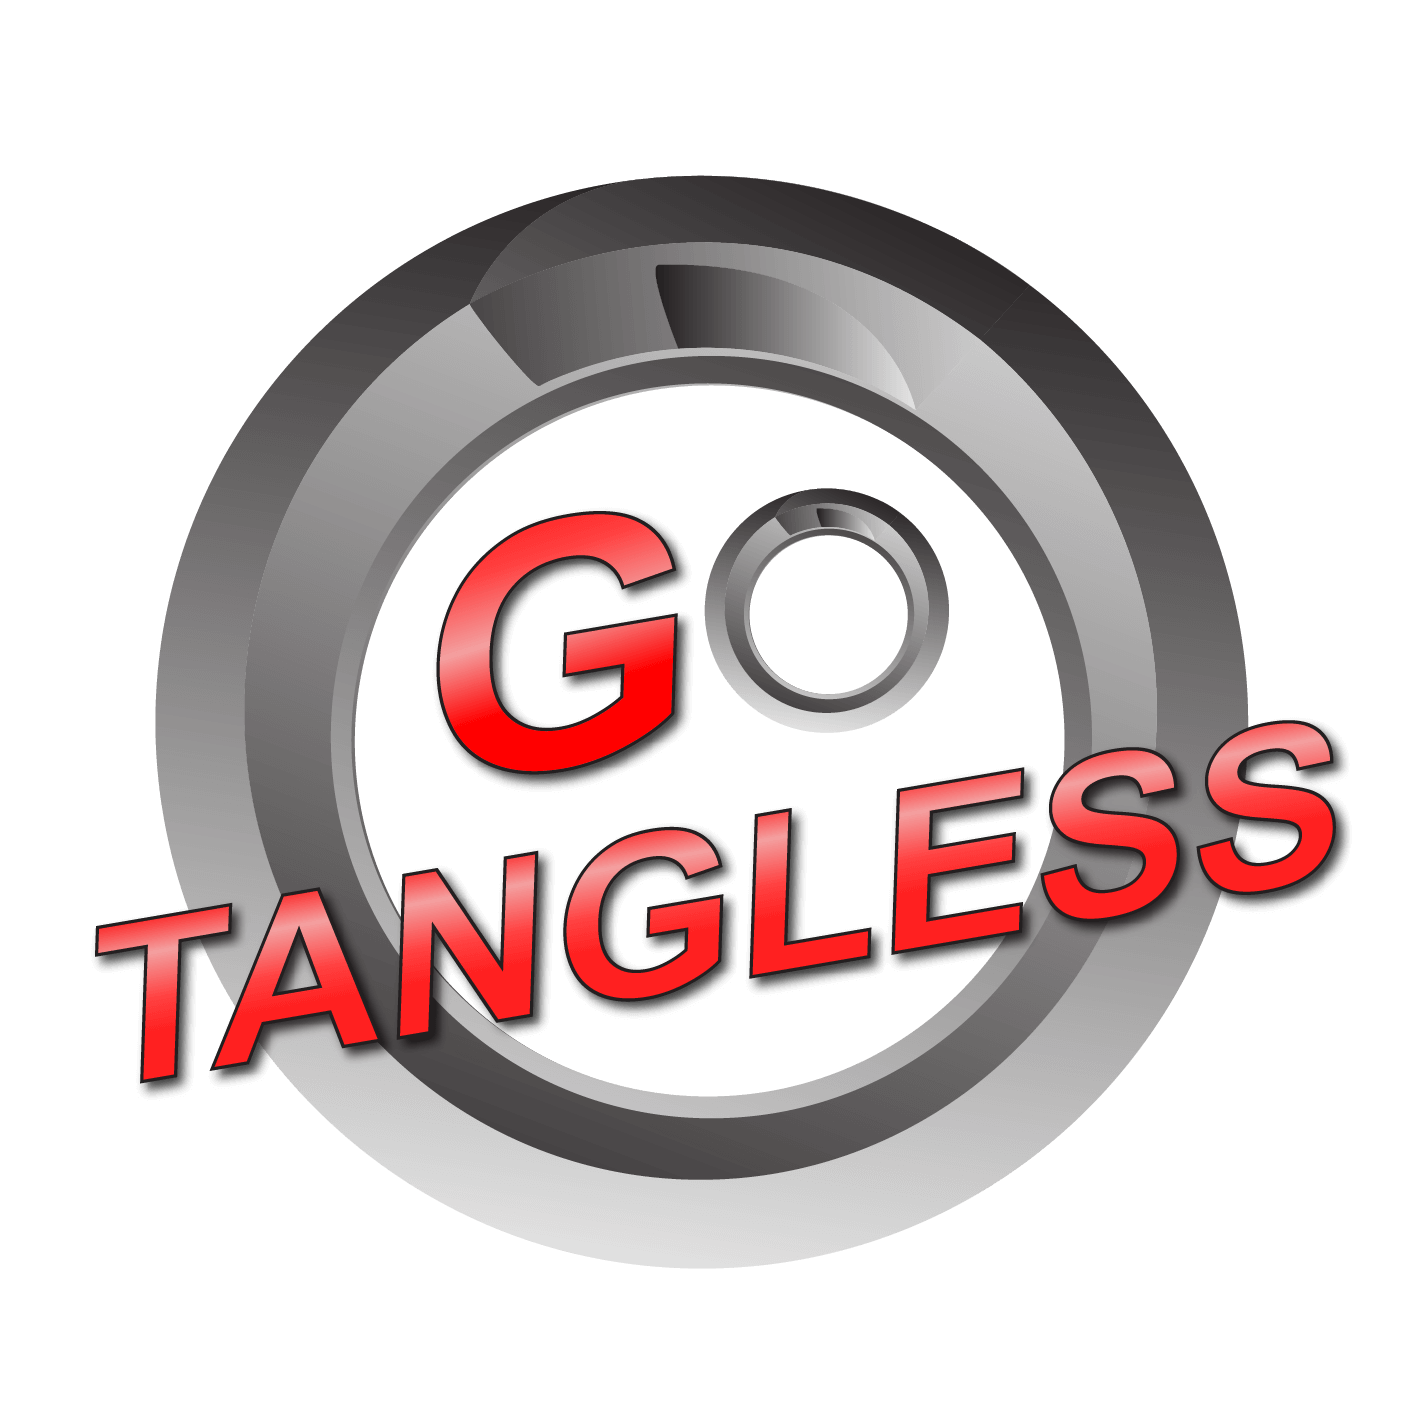 Go Tangless